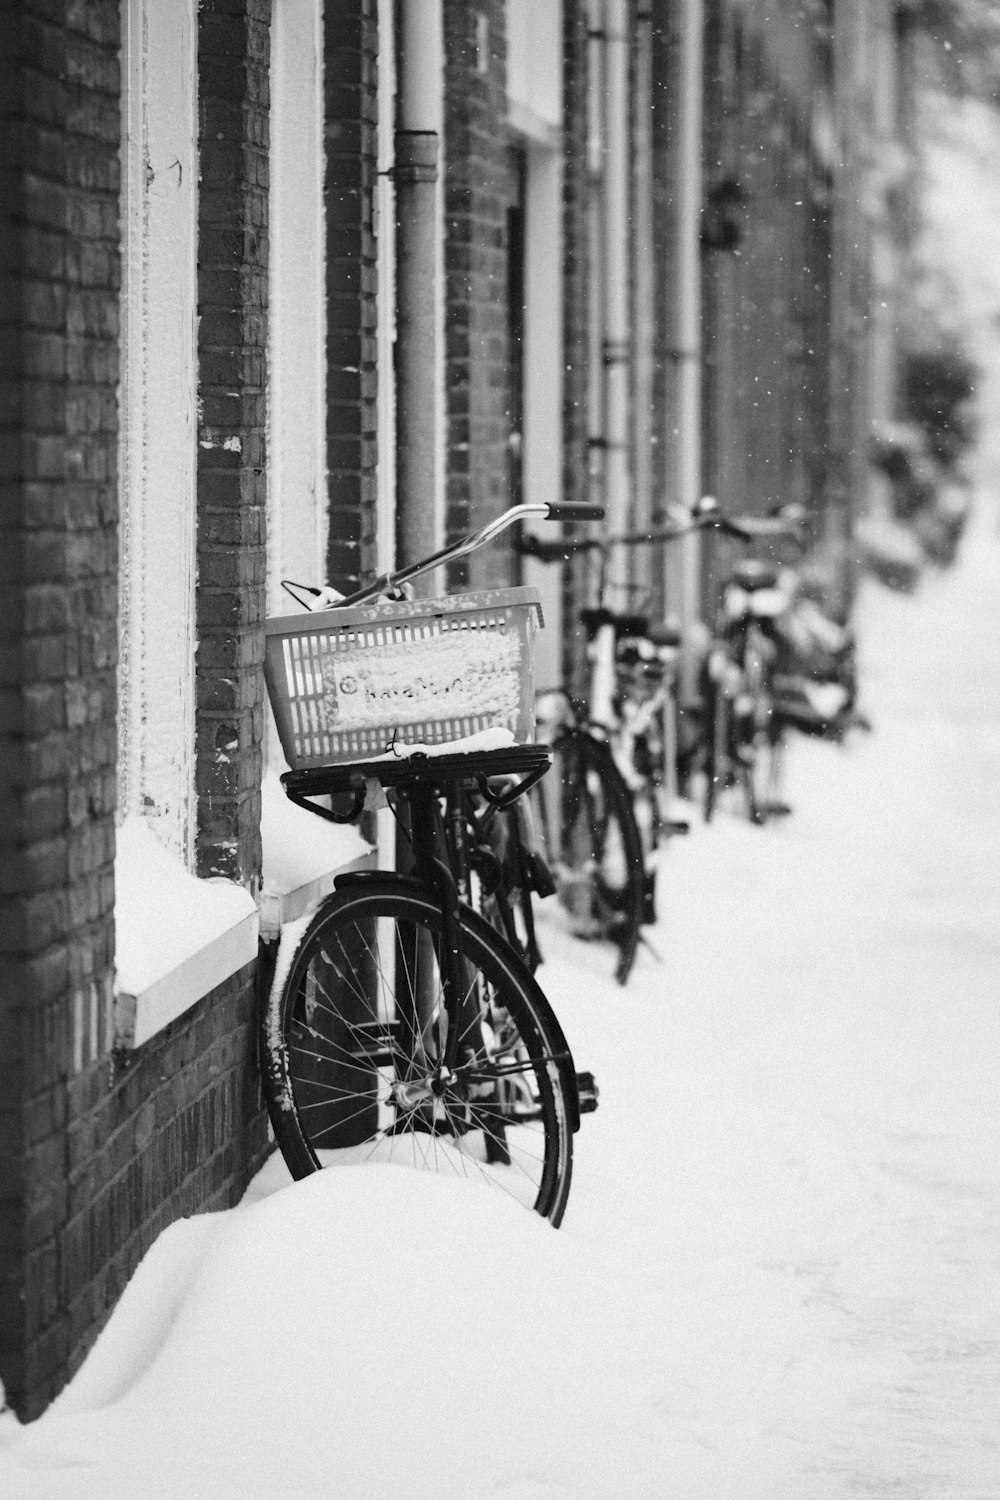 Bicicleta estacionada junto a una pared de ladrillo en fotografía en escala de grises